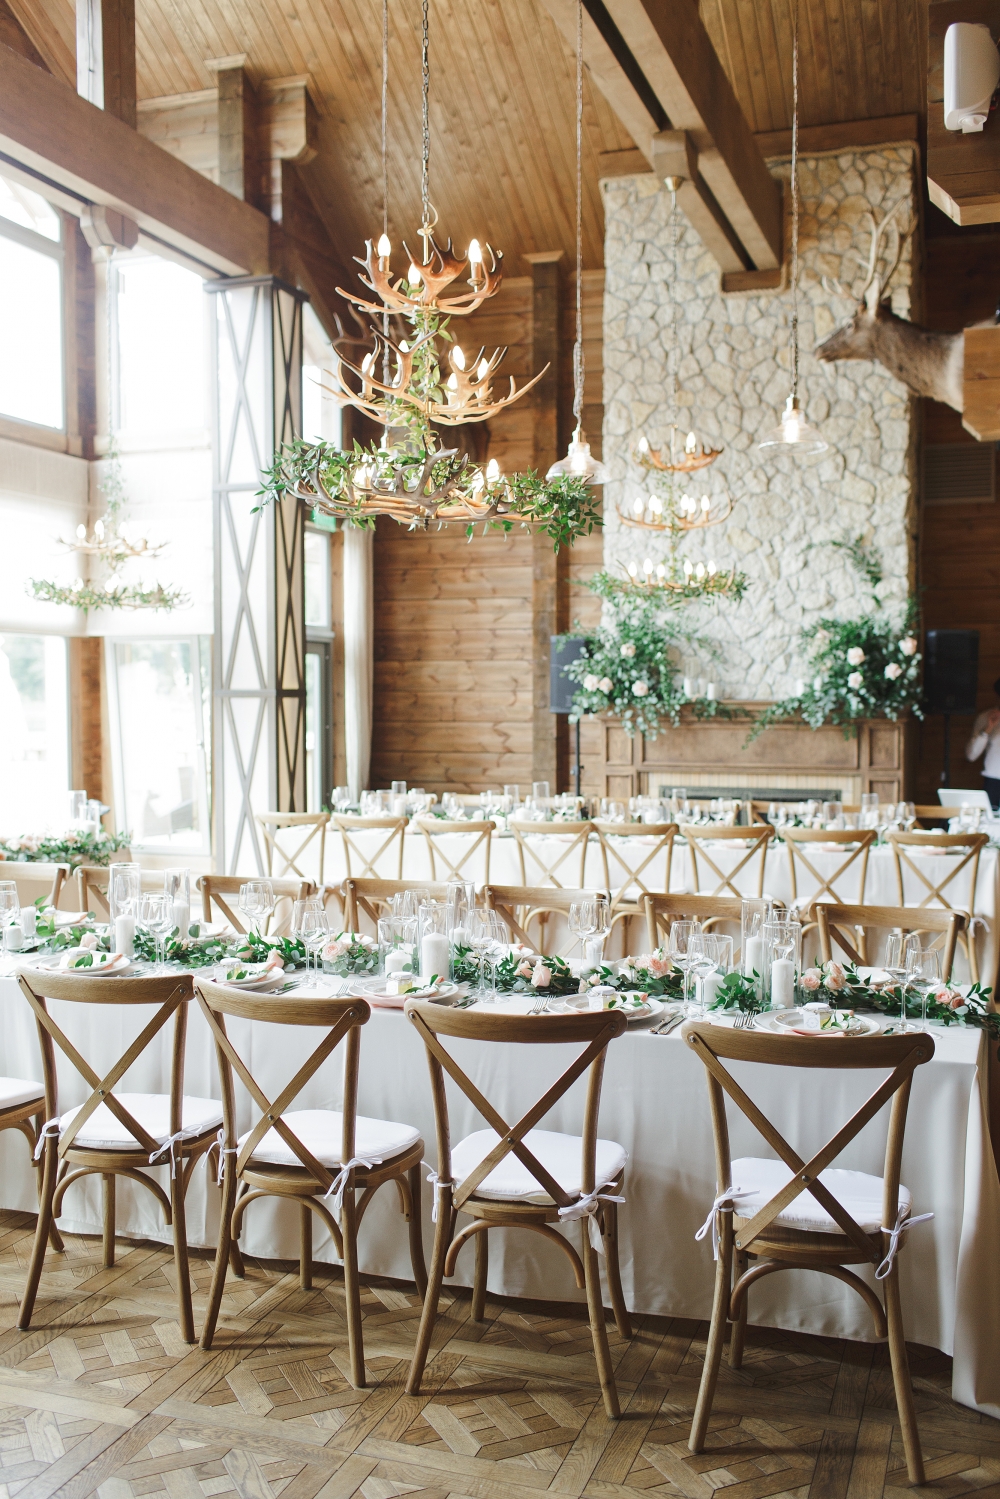 Столы гостей декорированы посередине гирляндой из зелени, цветов и свечей. Камин украшен свечами и композициями, деревянные стулья cross back. Люстры оформлены ветвями плетущейся зелени